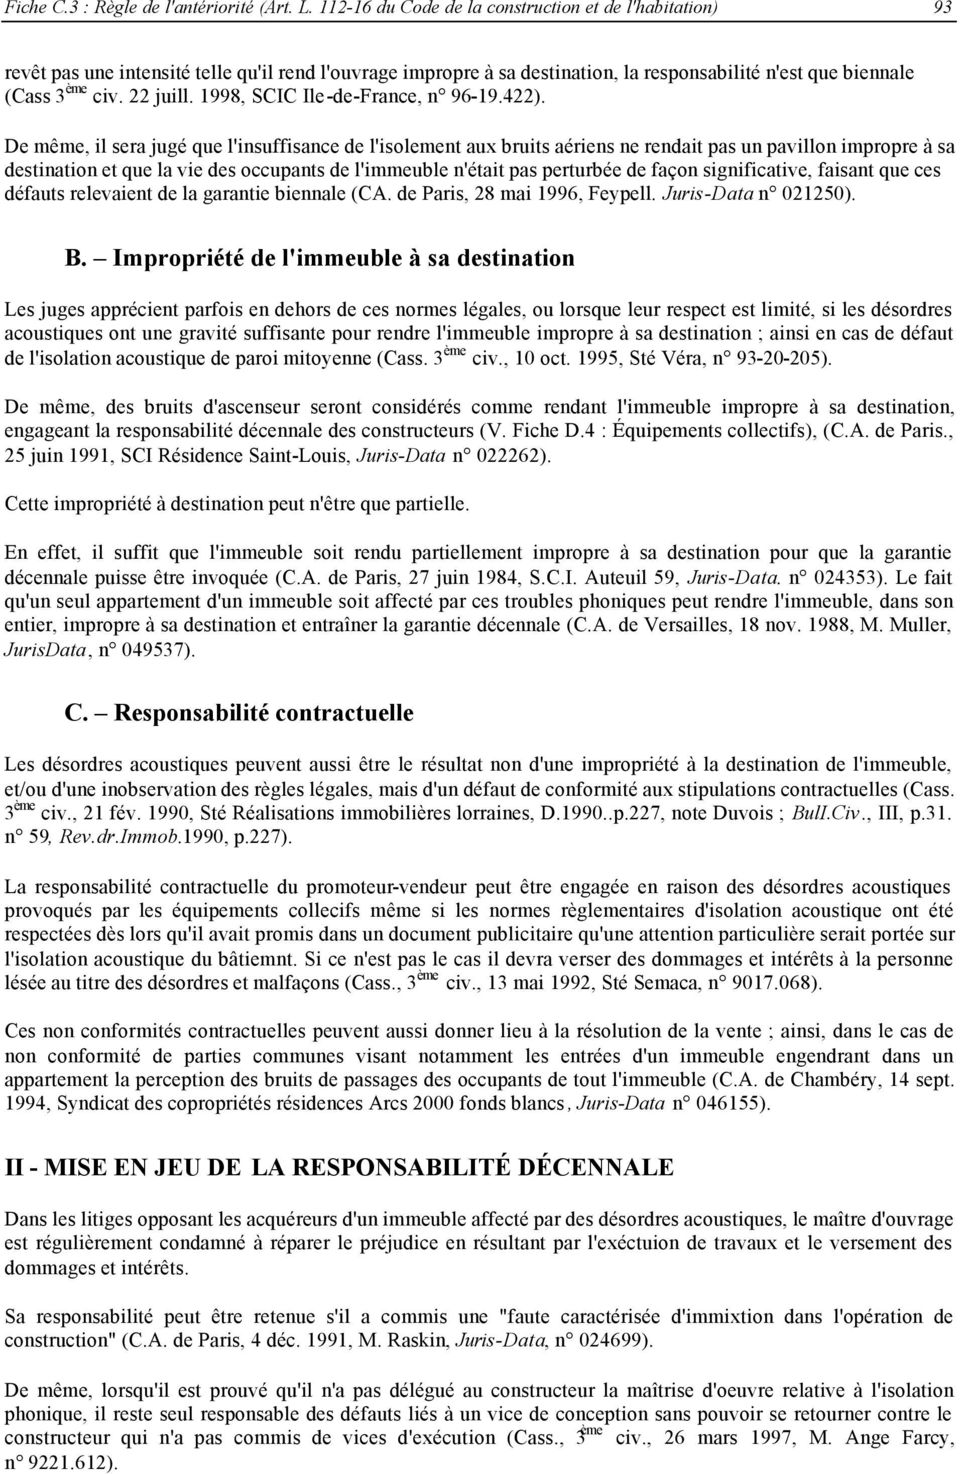 1998, SCIC Ile-de-France, n 96-19.422).